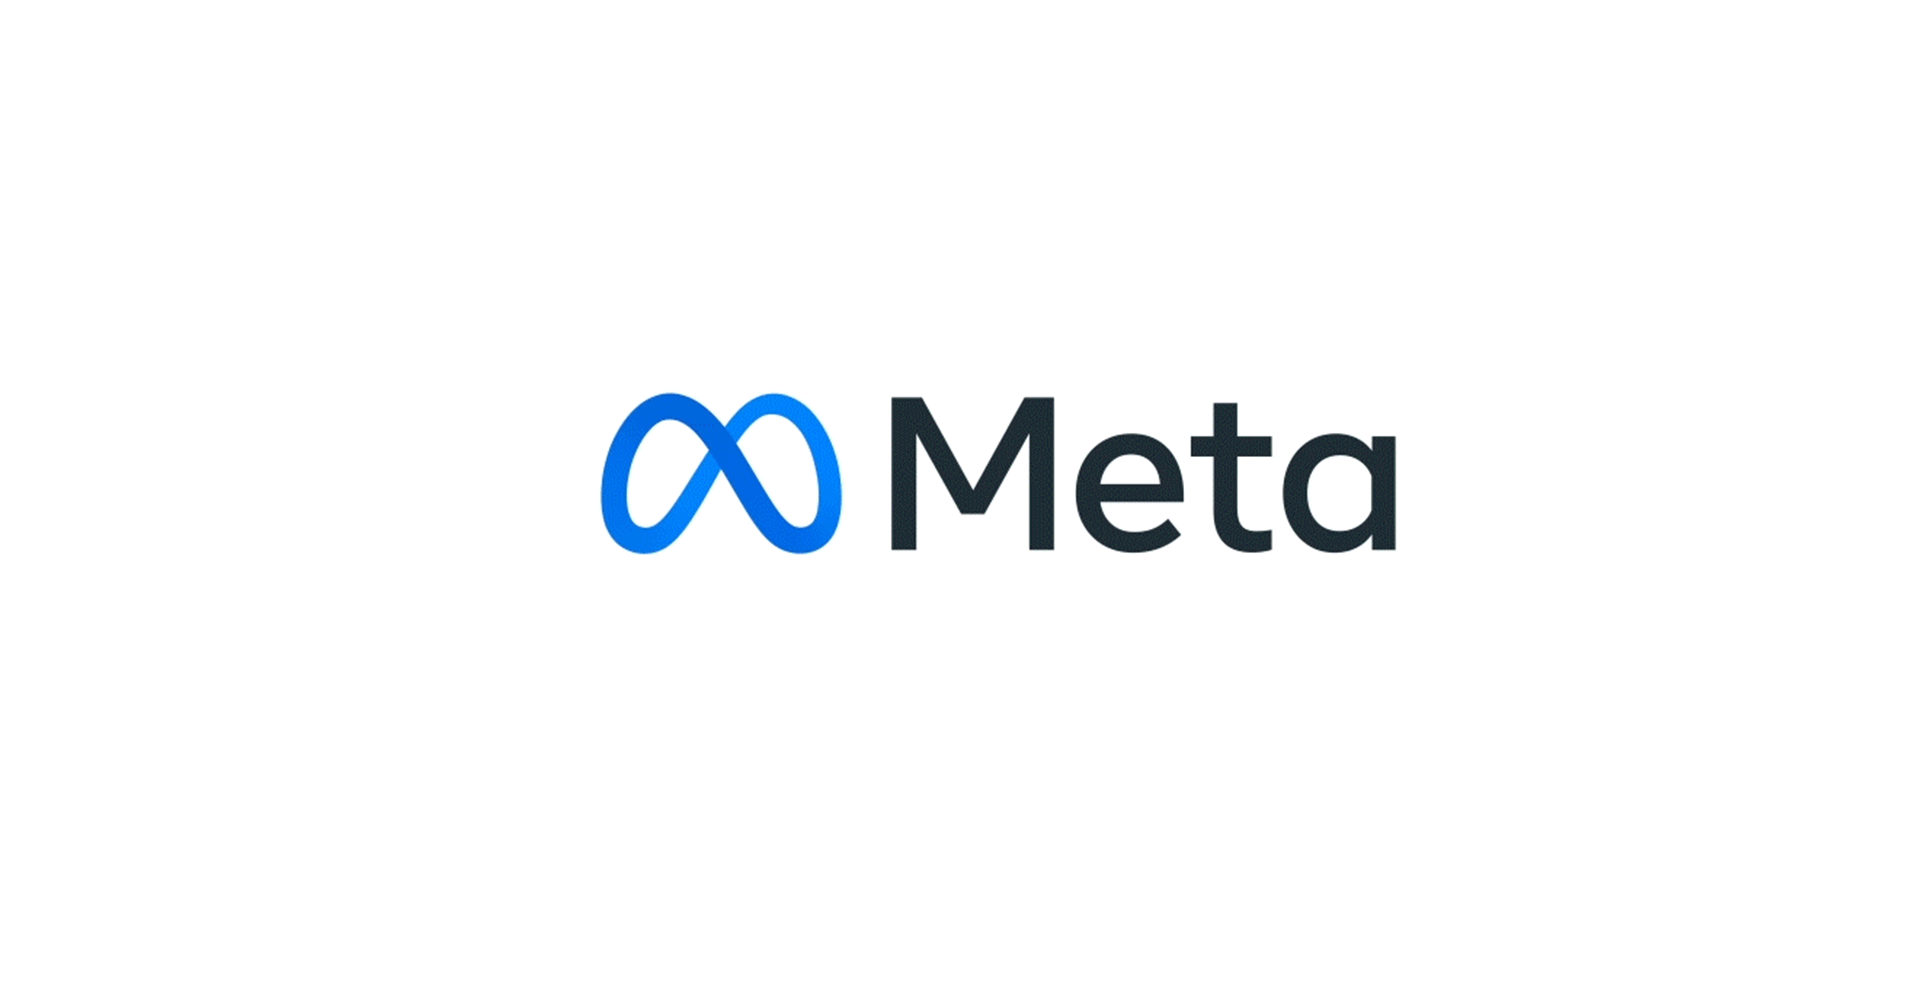 Meta ได้ข้อยุติกับ EU ในเรื่องการทดสอบกฎหมายดิจิทัล